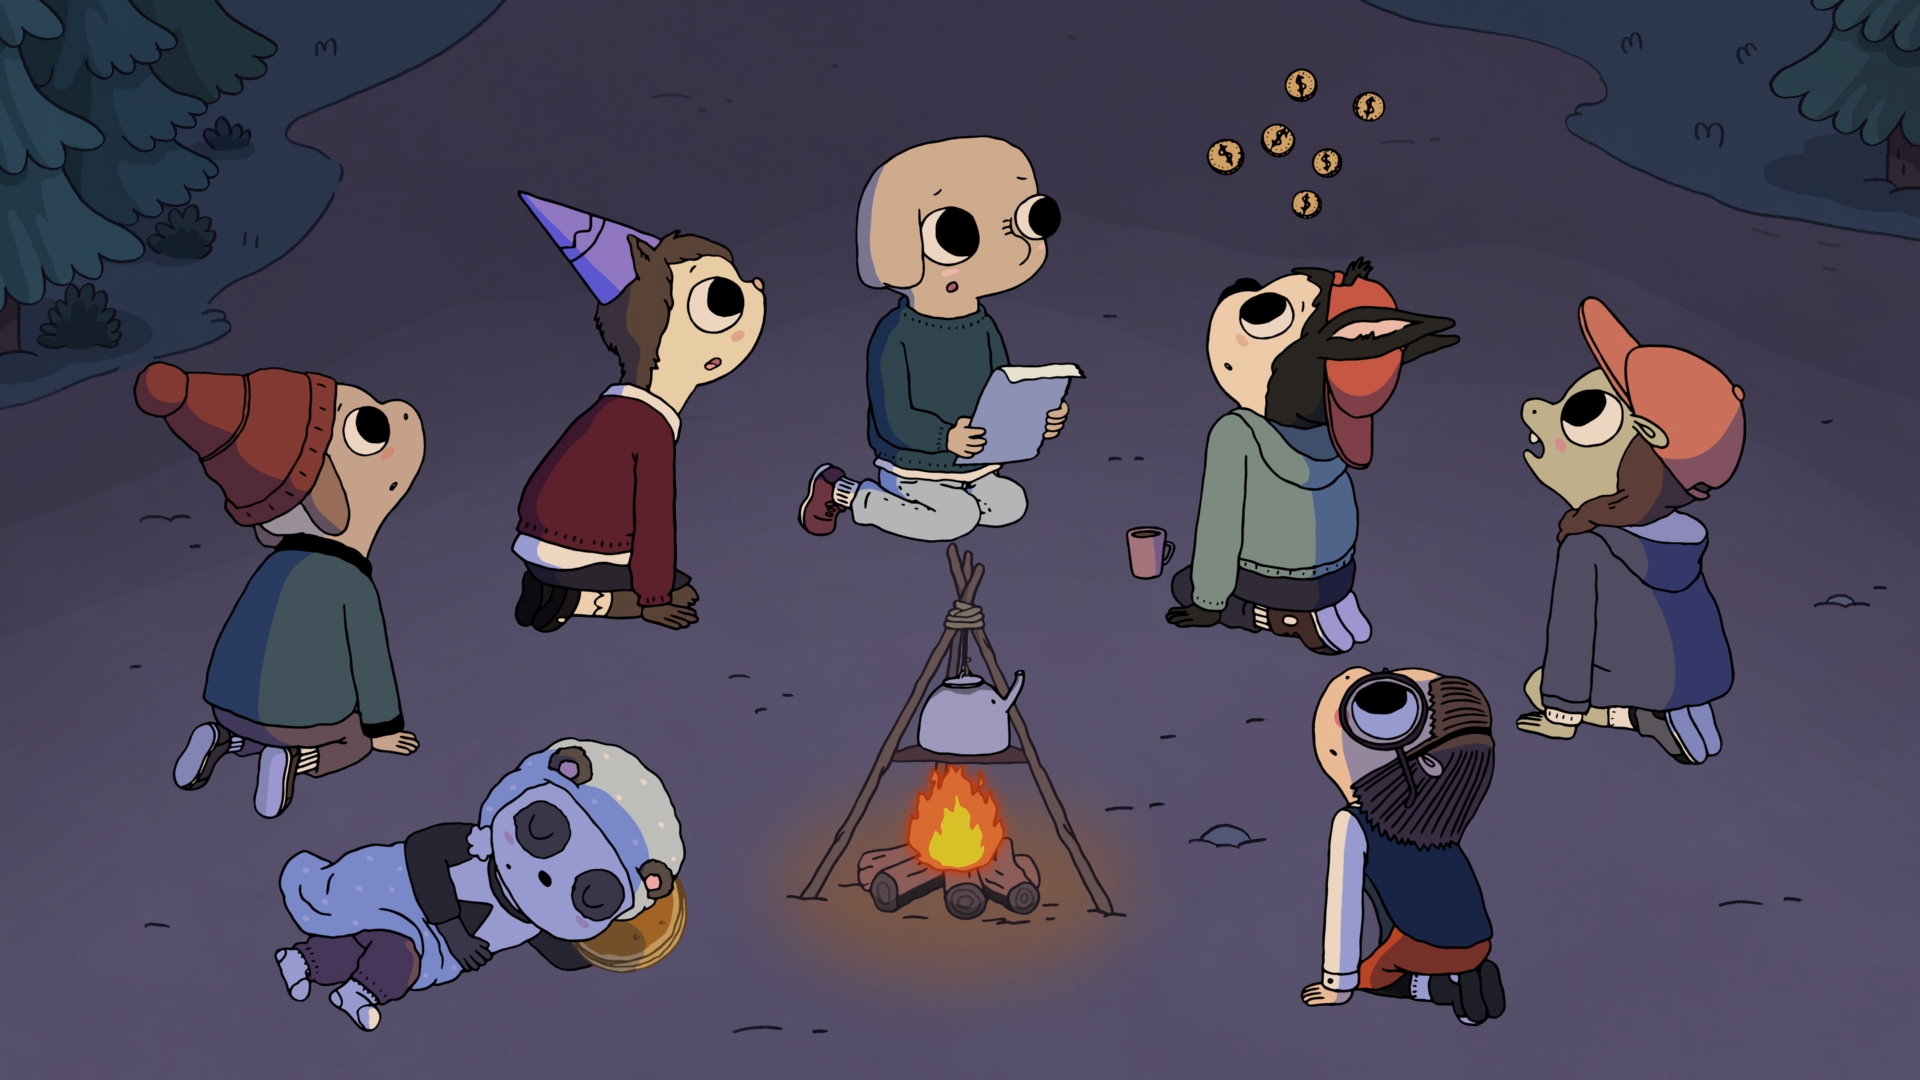  “Campamento de verano”: El nuevo show original de Cartoon Network